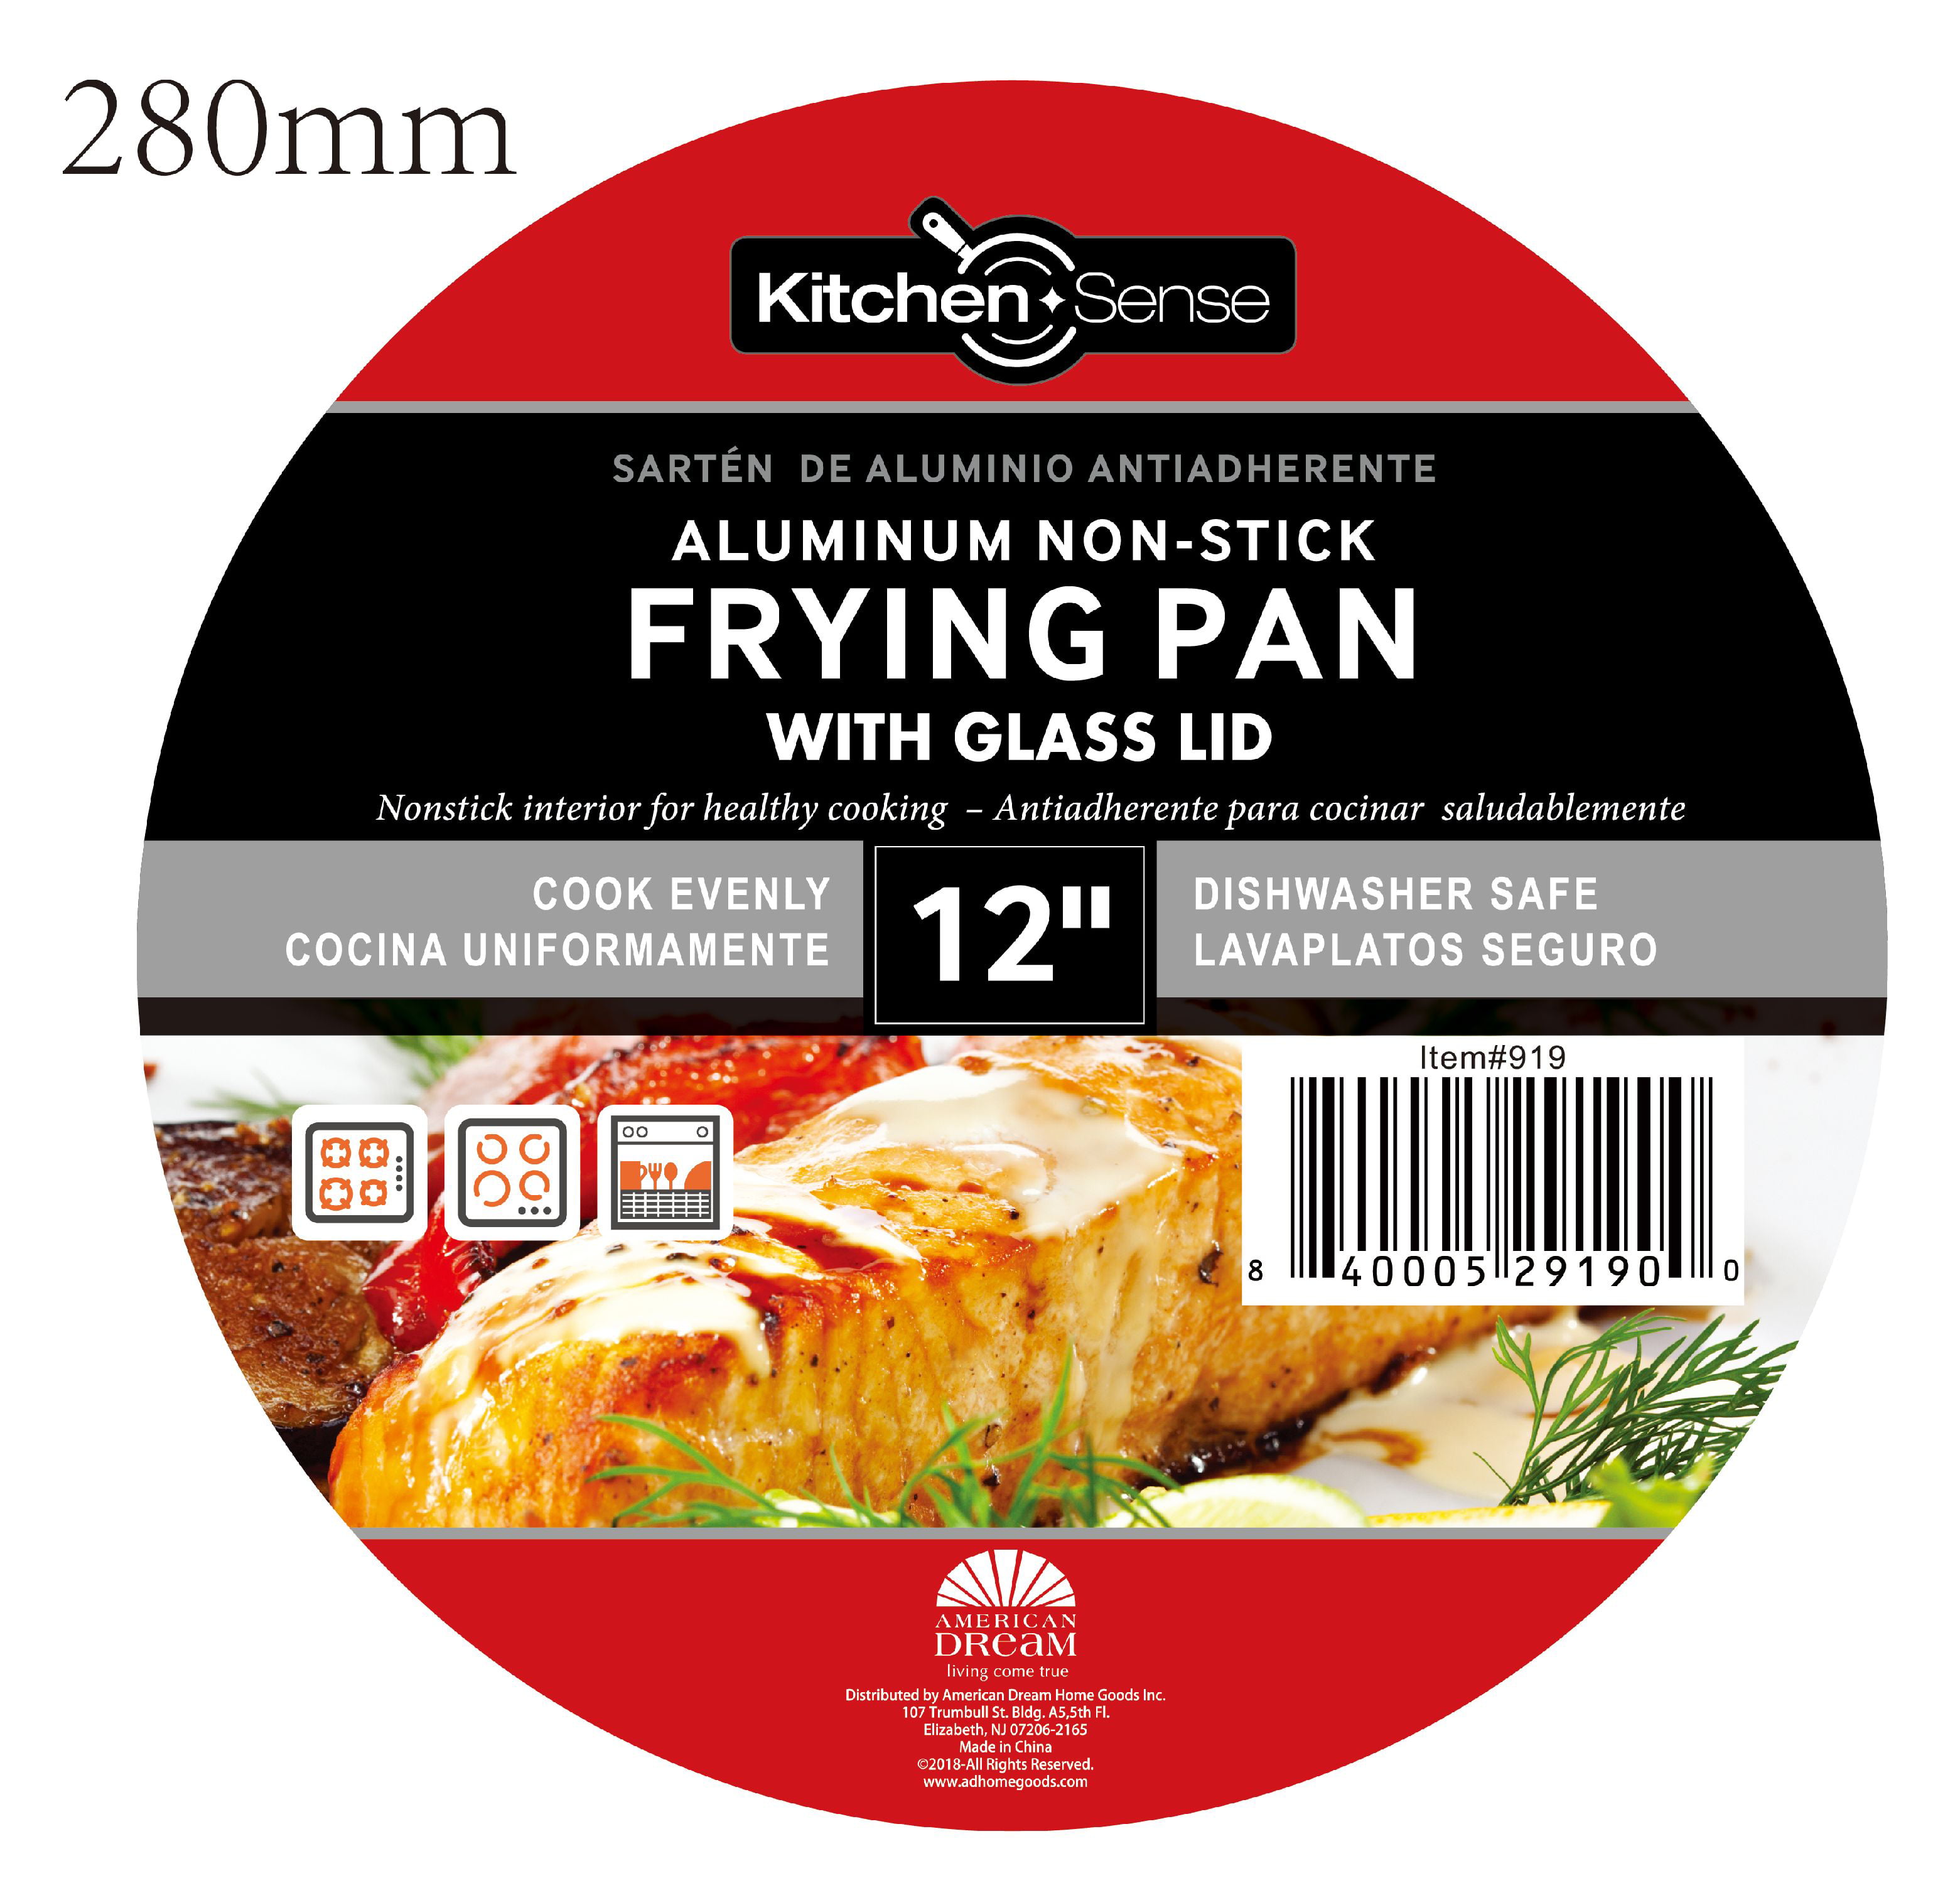 Authentic kitchen Fry Pan Nonstick 2.6-qt 10.3” Skillet Casserole Lid  Cookware